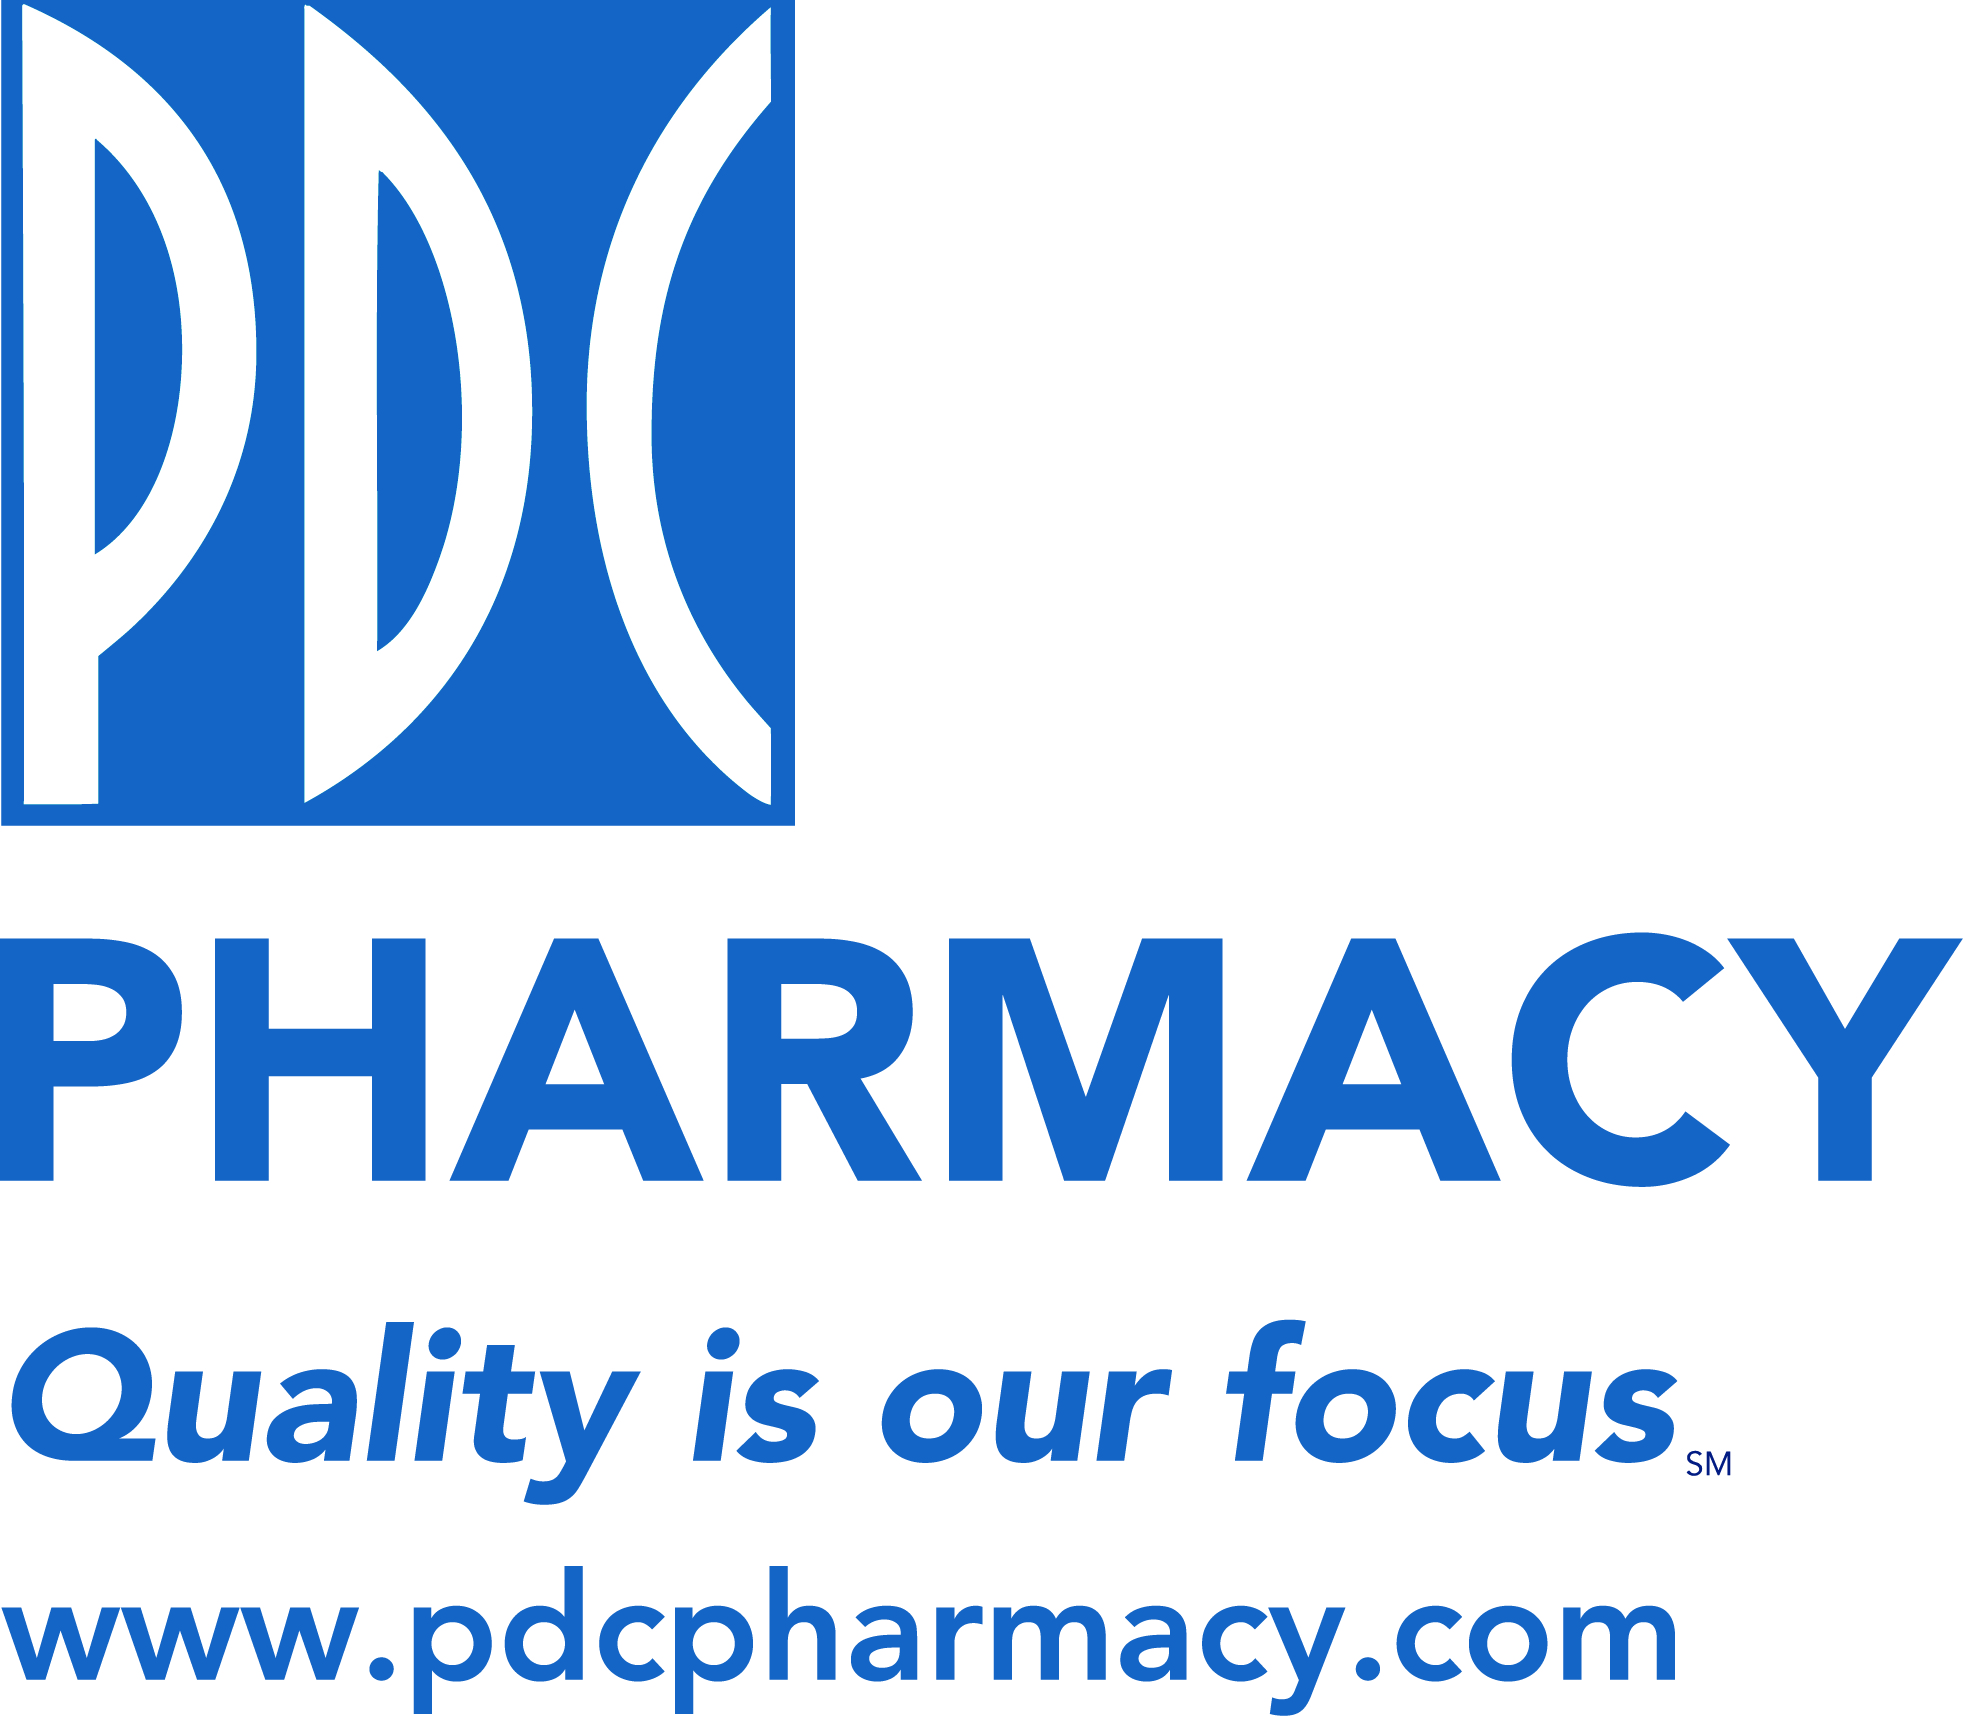 PDC Pharmacy Logo.jpg